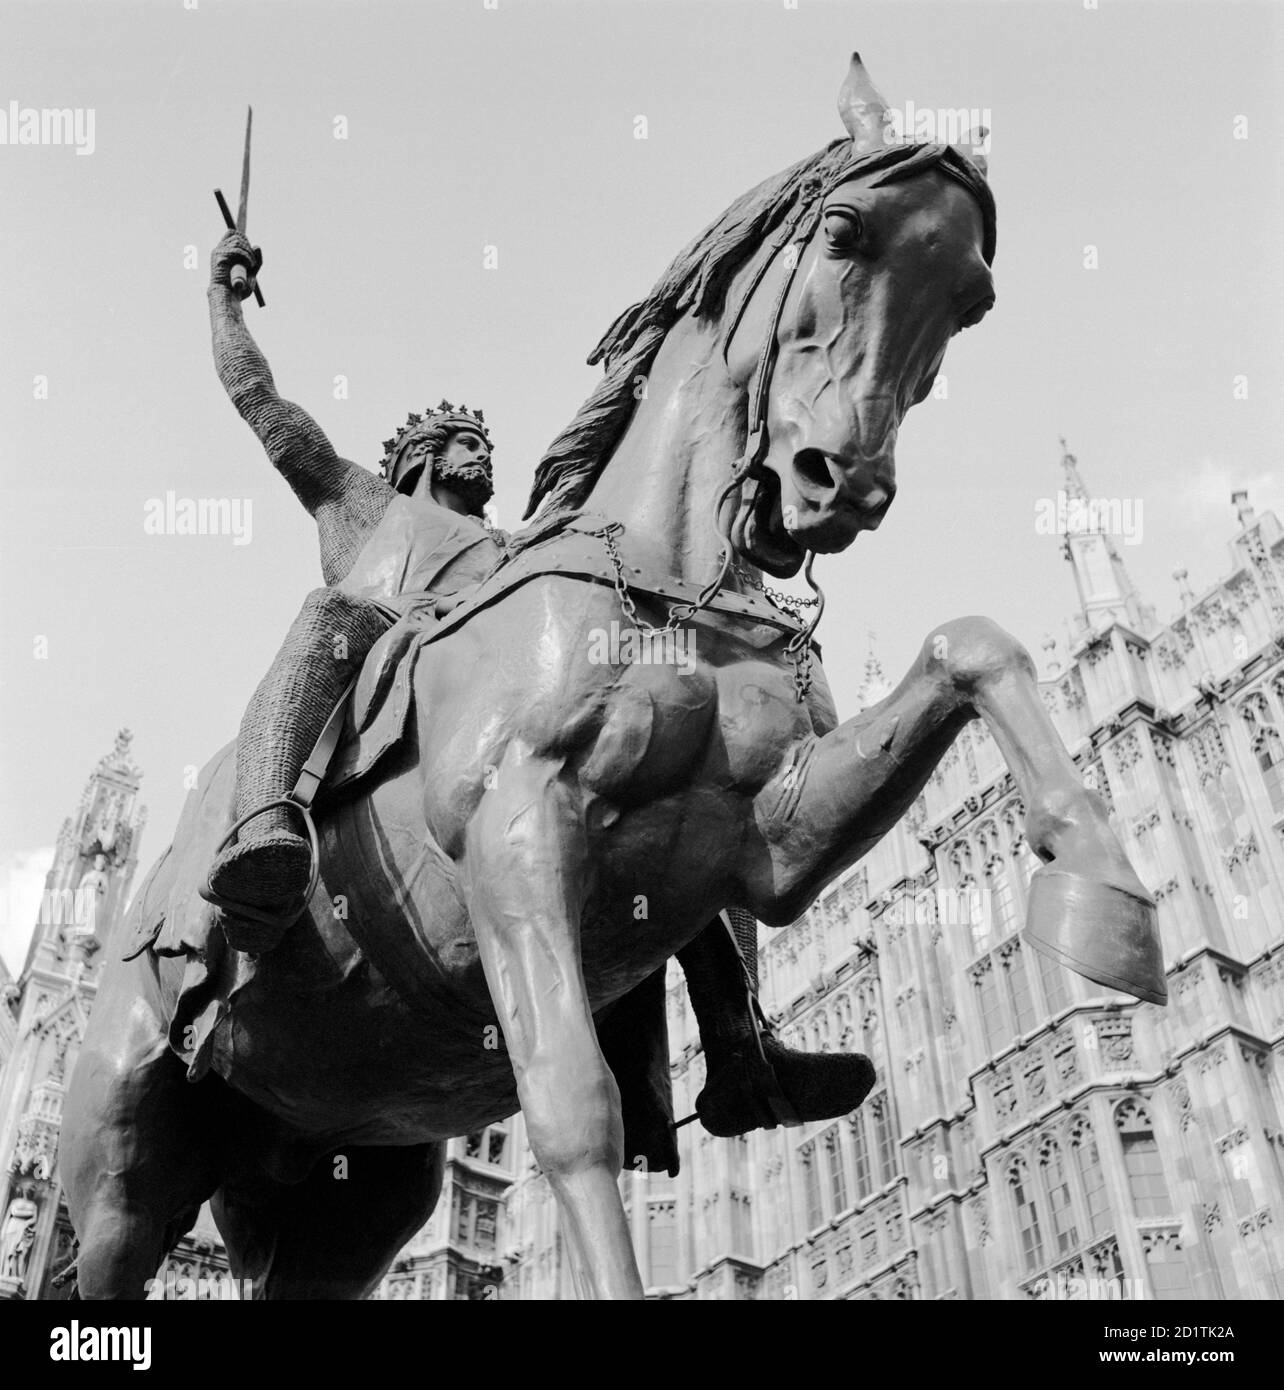 OLD PALACE YARD, Westminster, London. Detailansicht der Statue von Richard Coeur de Lion mit Blick auf die Reiterbronze. Es wurde 1860 von Carlo Marochetti hergestellt. Fotografiert von Eric de Mare. Datumsbereich: 1945-1980. Stockfoto